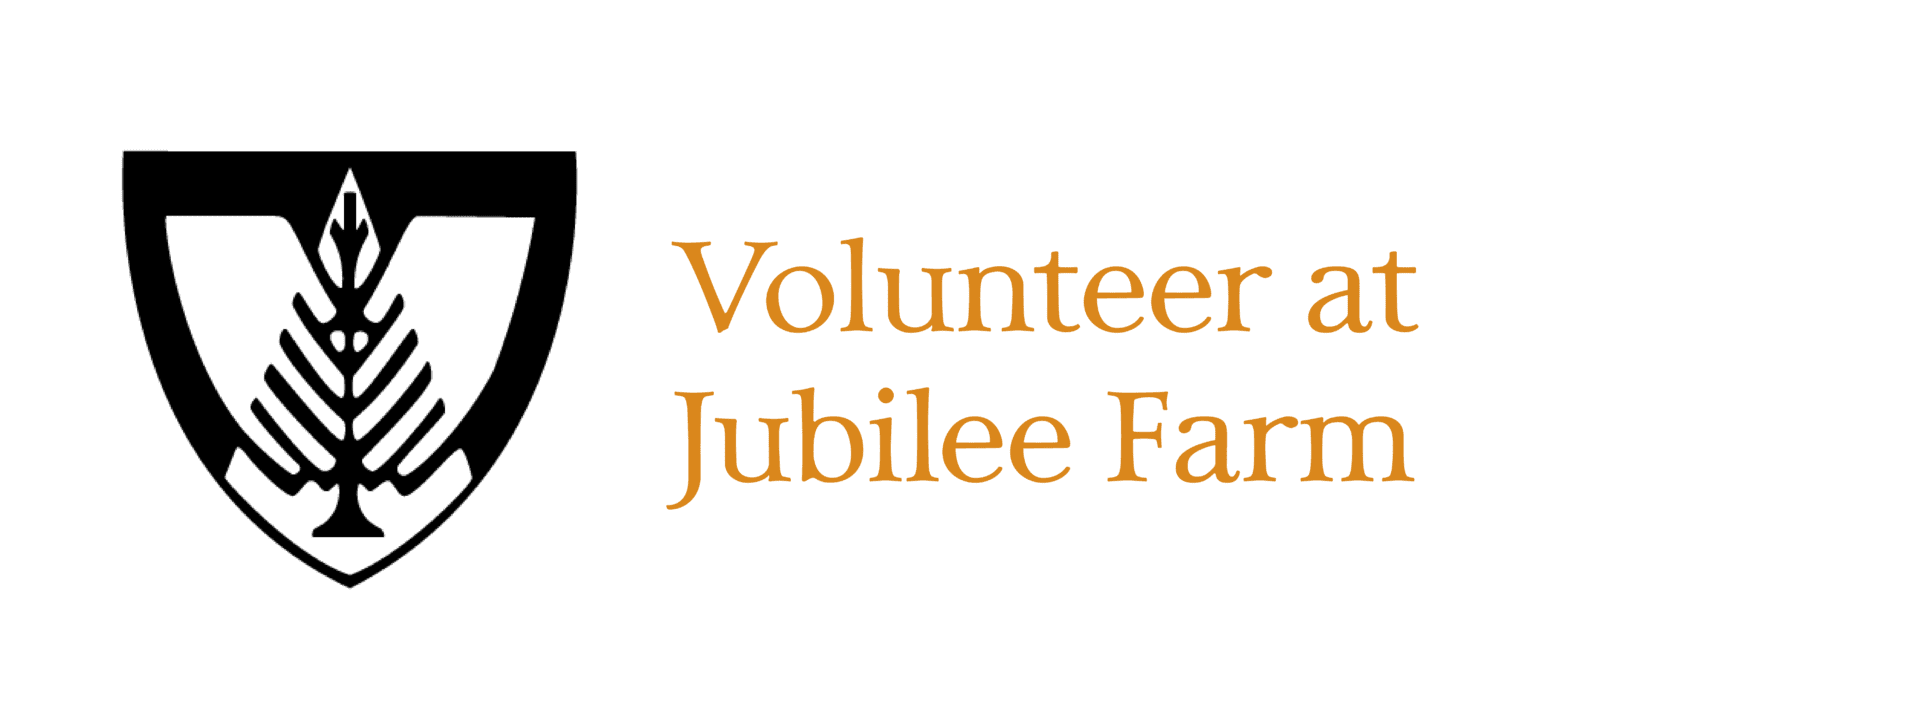 VolunteerAtJubileeFarm-01